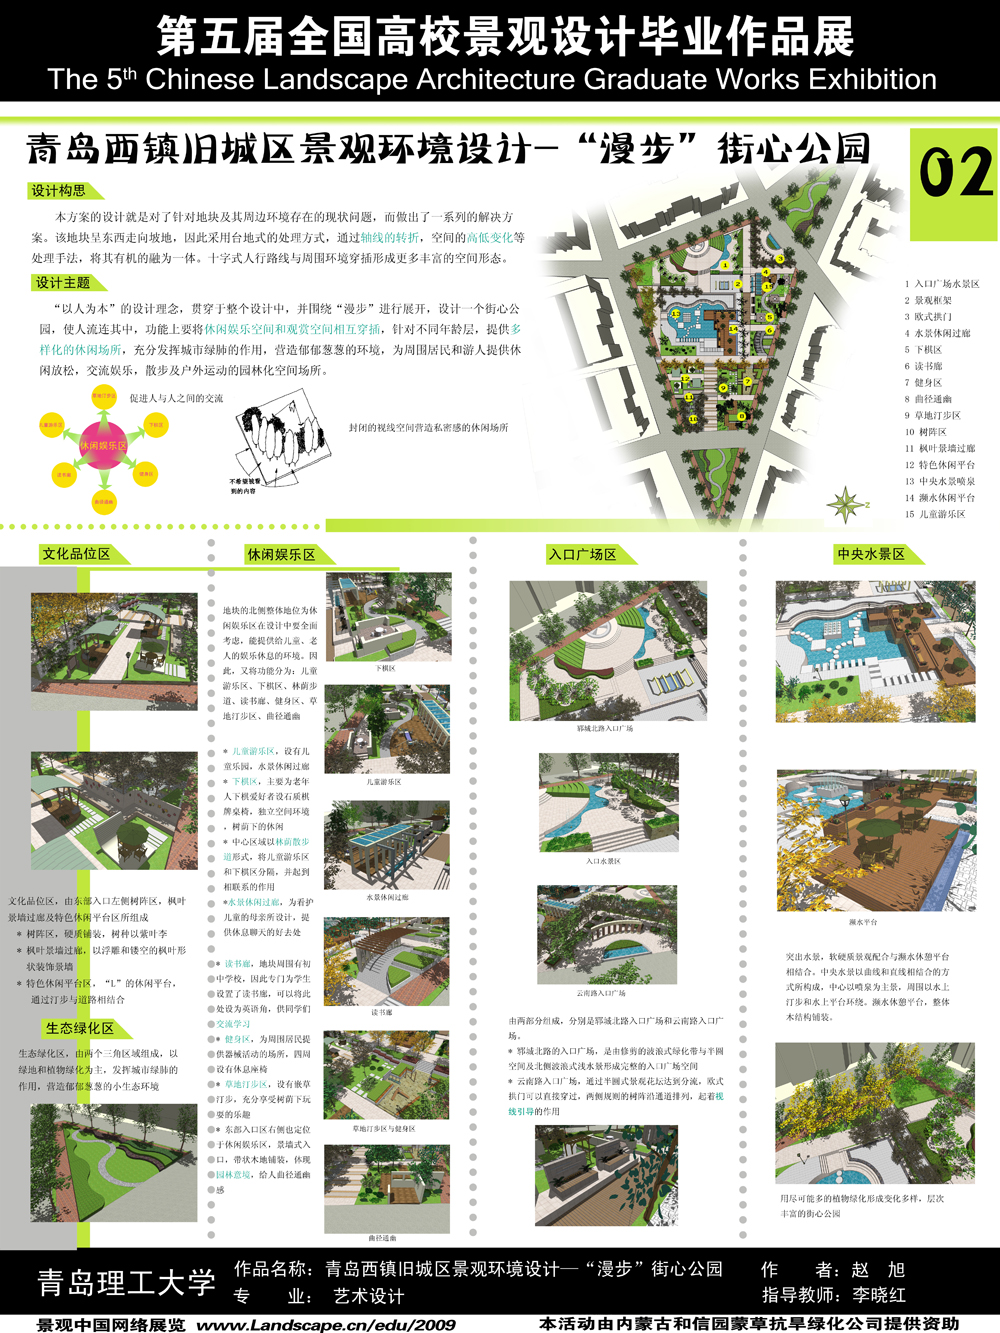 青岛西镇旧城区景观环境设计—“漫步”街心公园-2